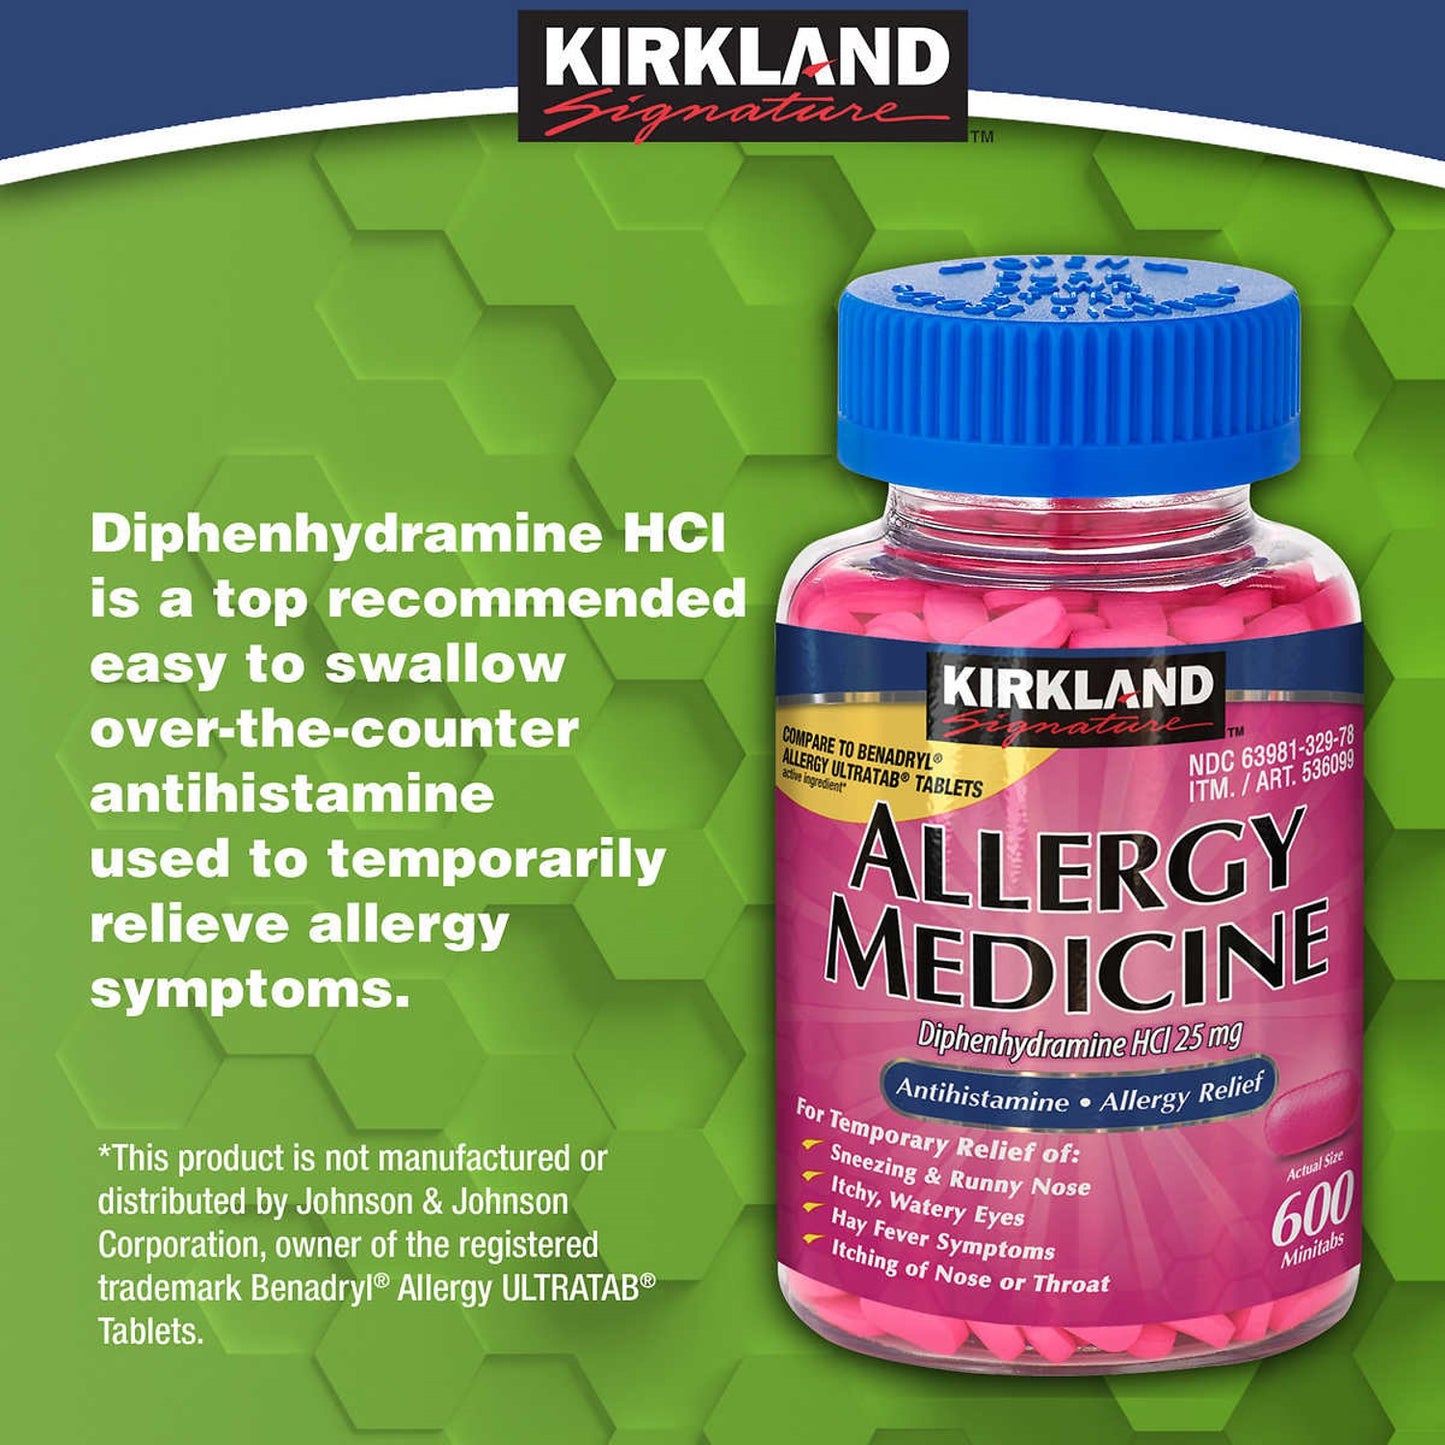 Kirkland Signature Allergy Medicine Diphenhydramine HCI 25 mg - 600 Minitabs